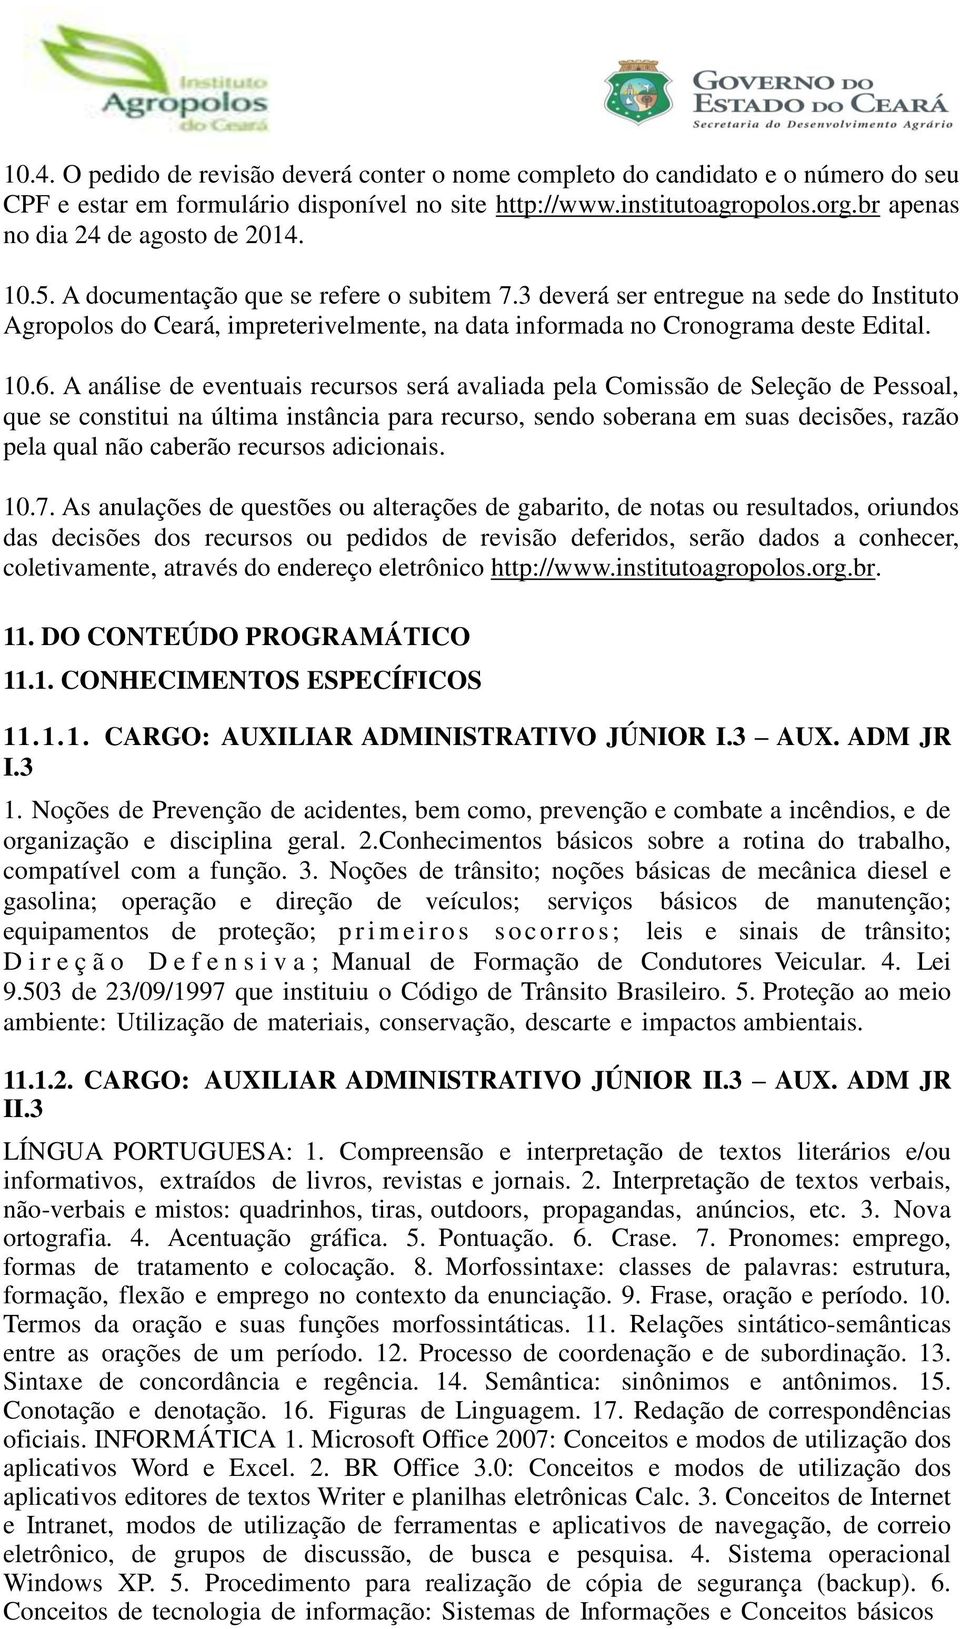 3 deverá ser entregue na sede do Instituto Agropolos do Ceará, impreterivelmente, na data informada no Cronograma deste Edital. 10.6.